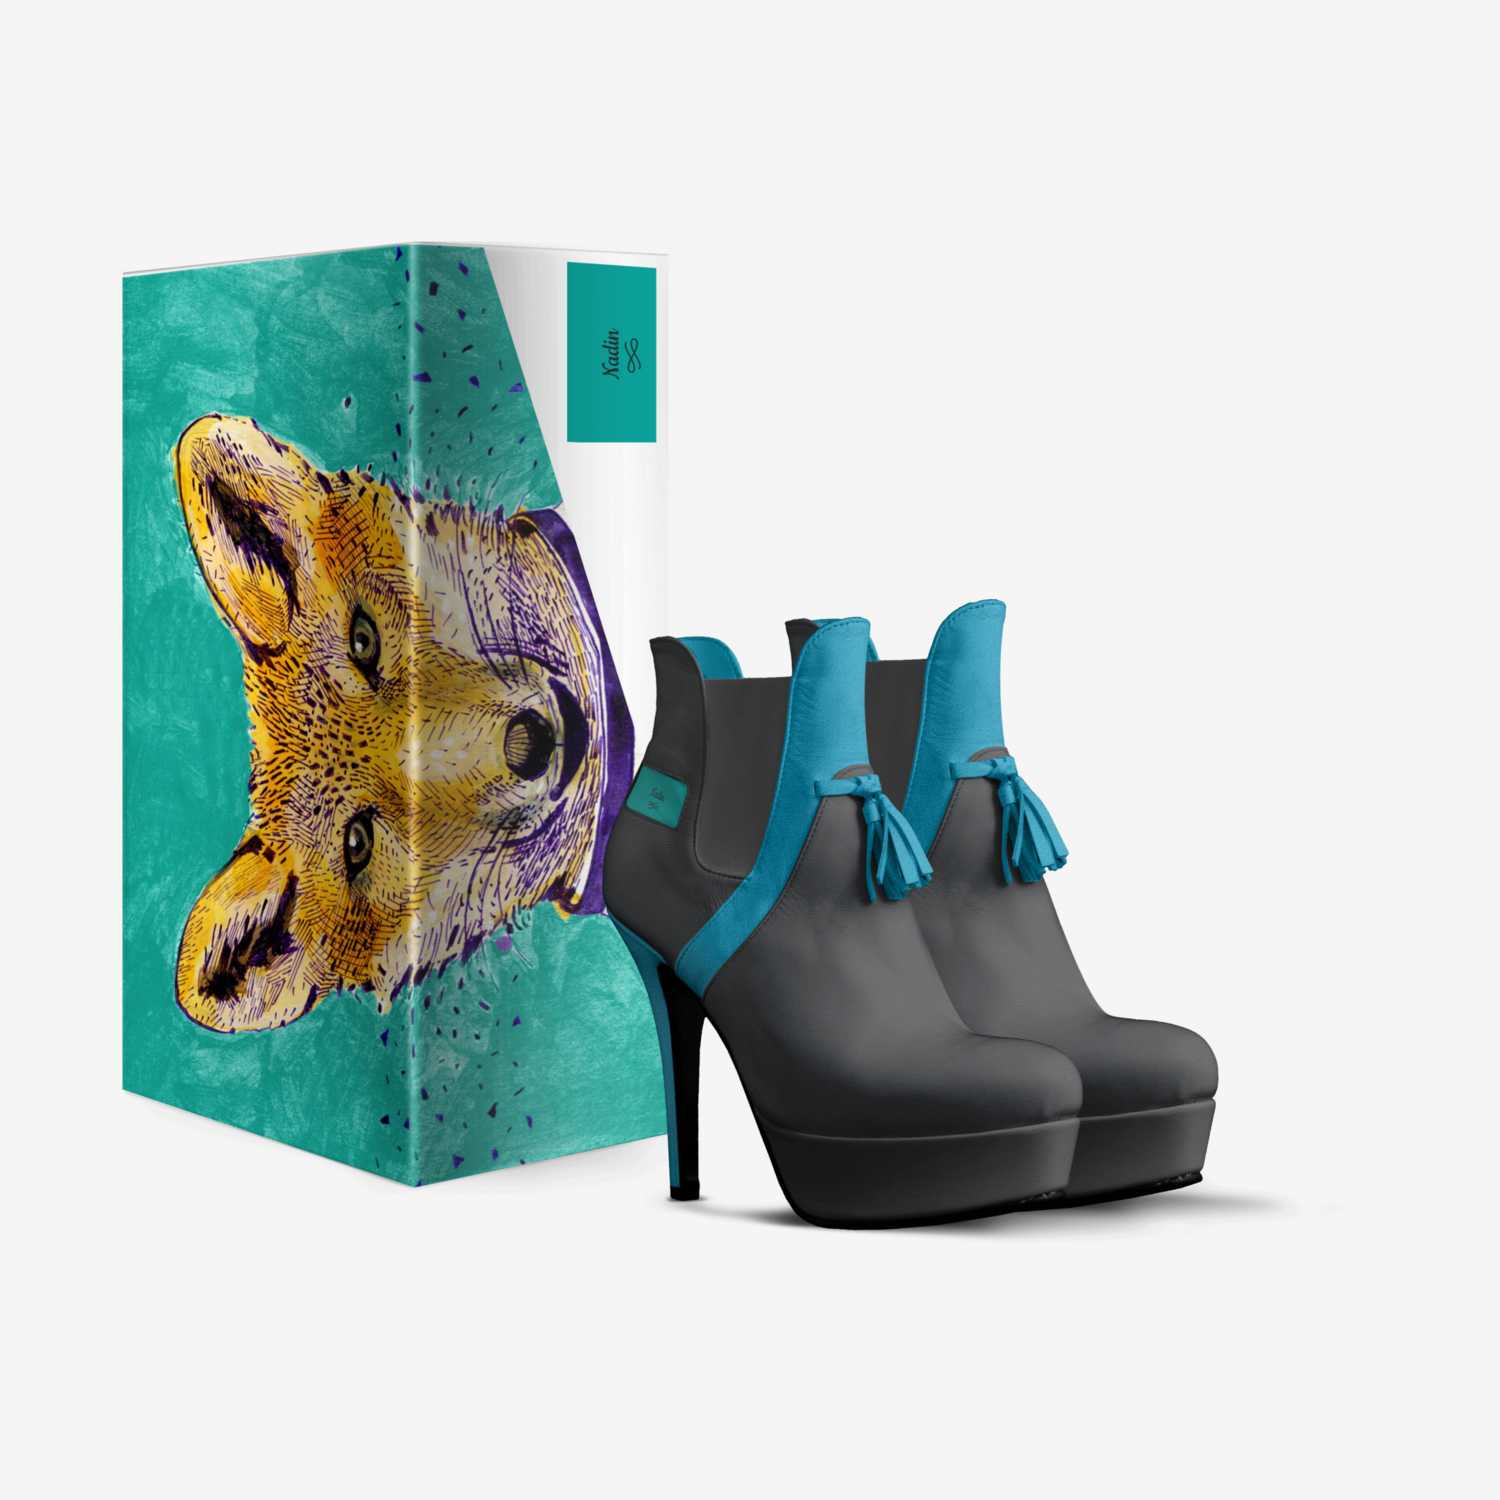 Nadin custom made in Italy shoes by Dina Aloxa | Box view